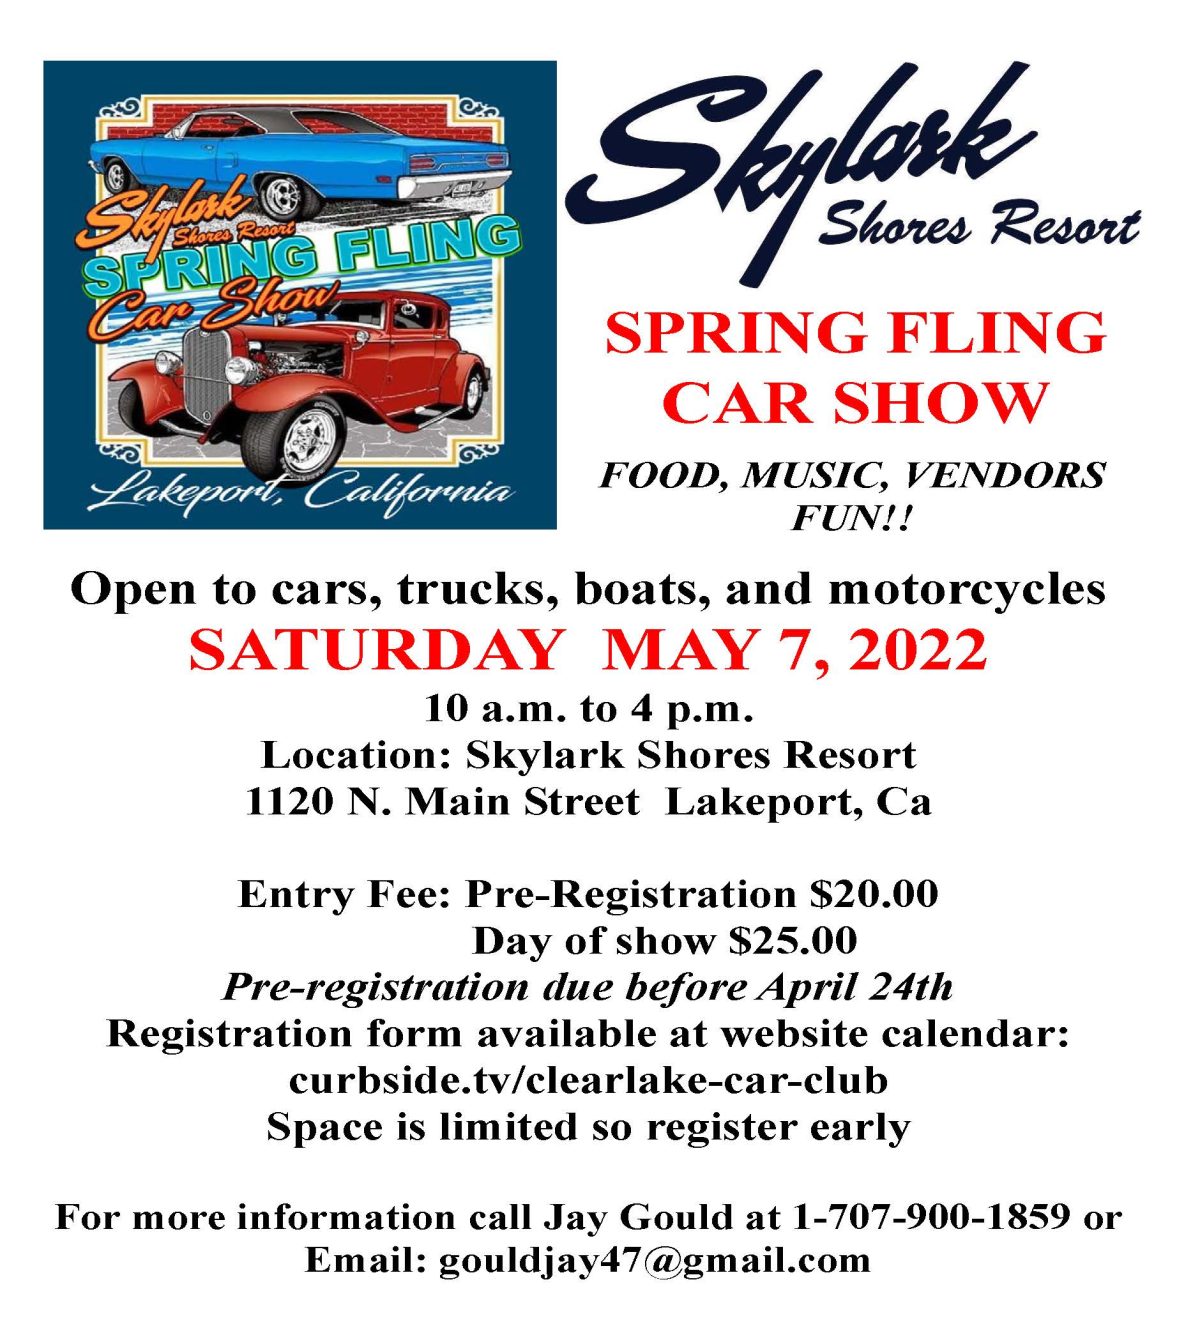 Skylark Shores Resort Show & Shine Car Show